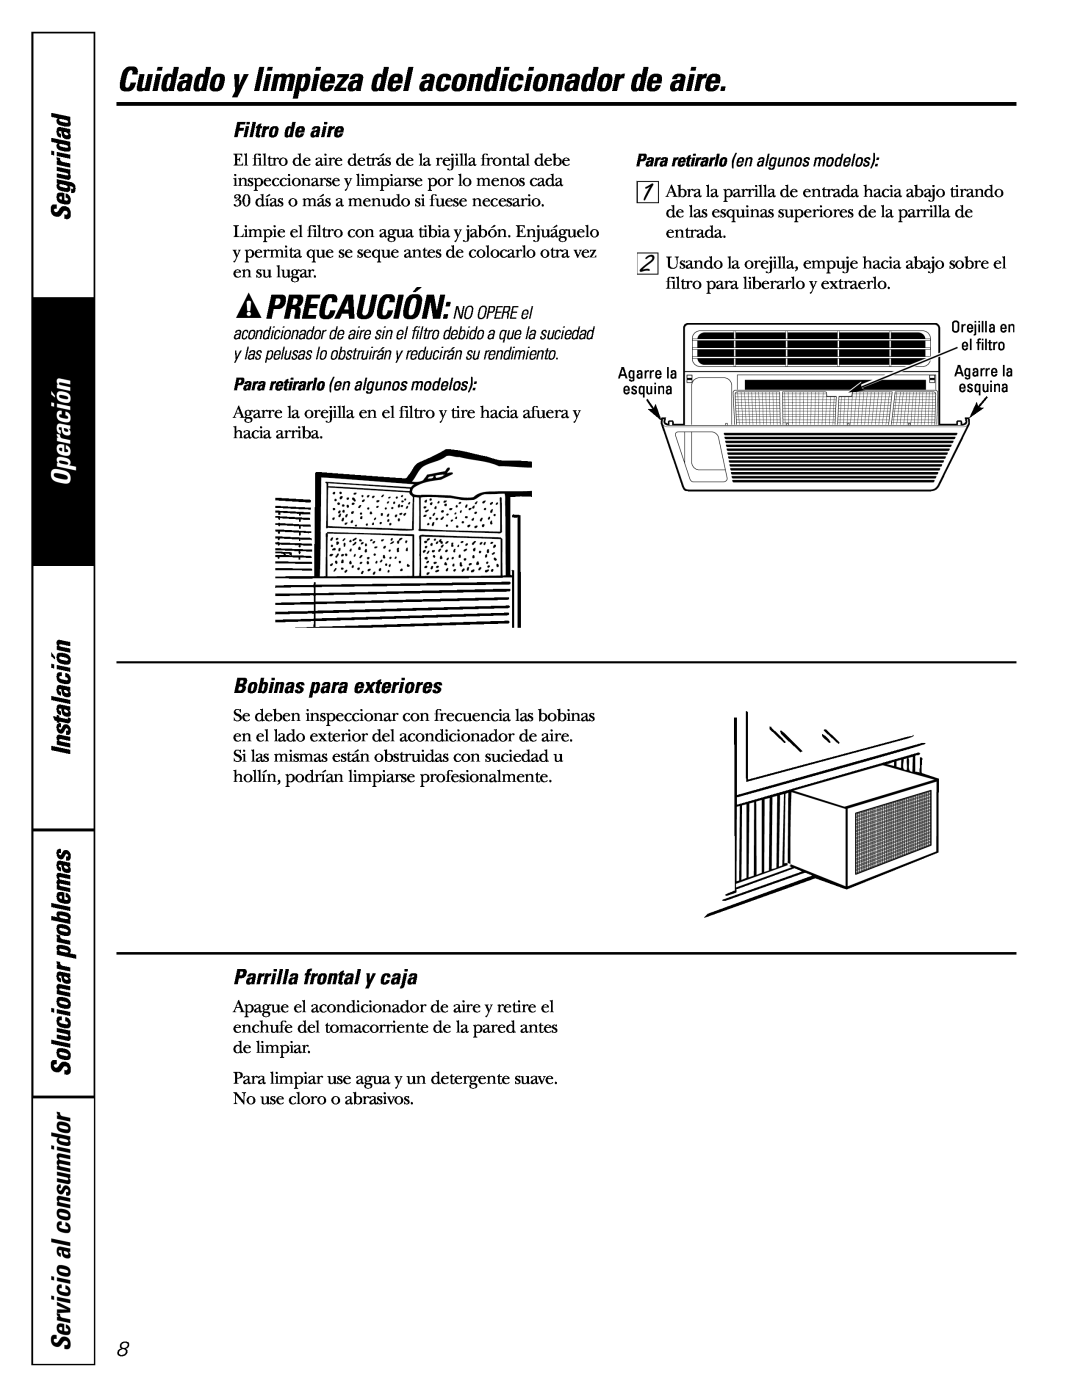 GE AGW06 Cuidado y limpieza del acondicionador de aire, PRECAUCIÓN: NO OPERE el, Seguridad, Filtro de aire, Operación 